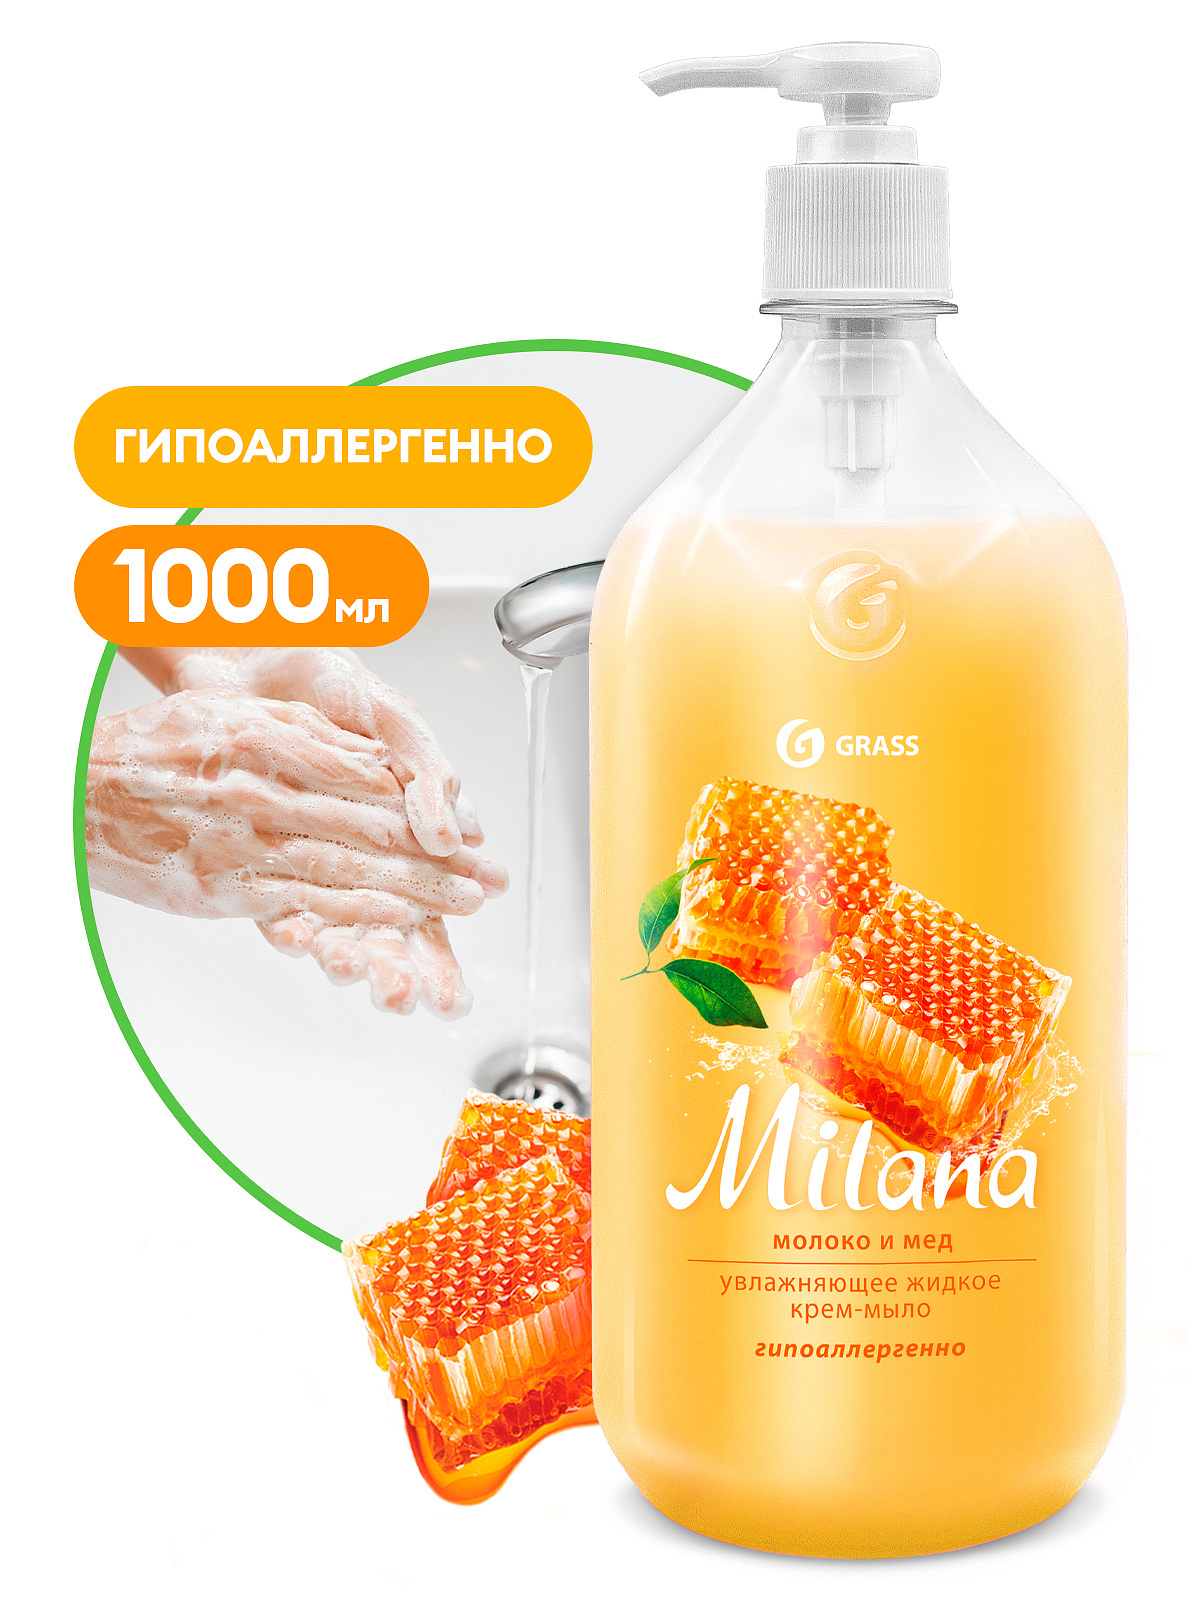 1 Жидкое крем-мыло "Milana" молоко и мед с дозатором (флакон 1000 мл)